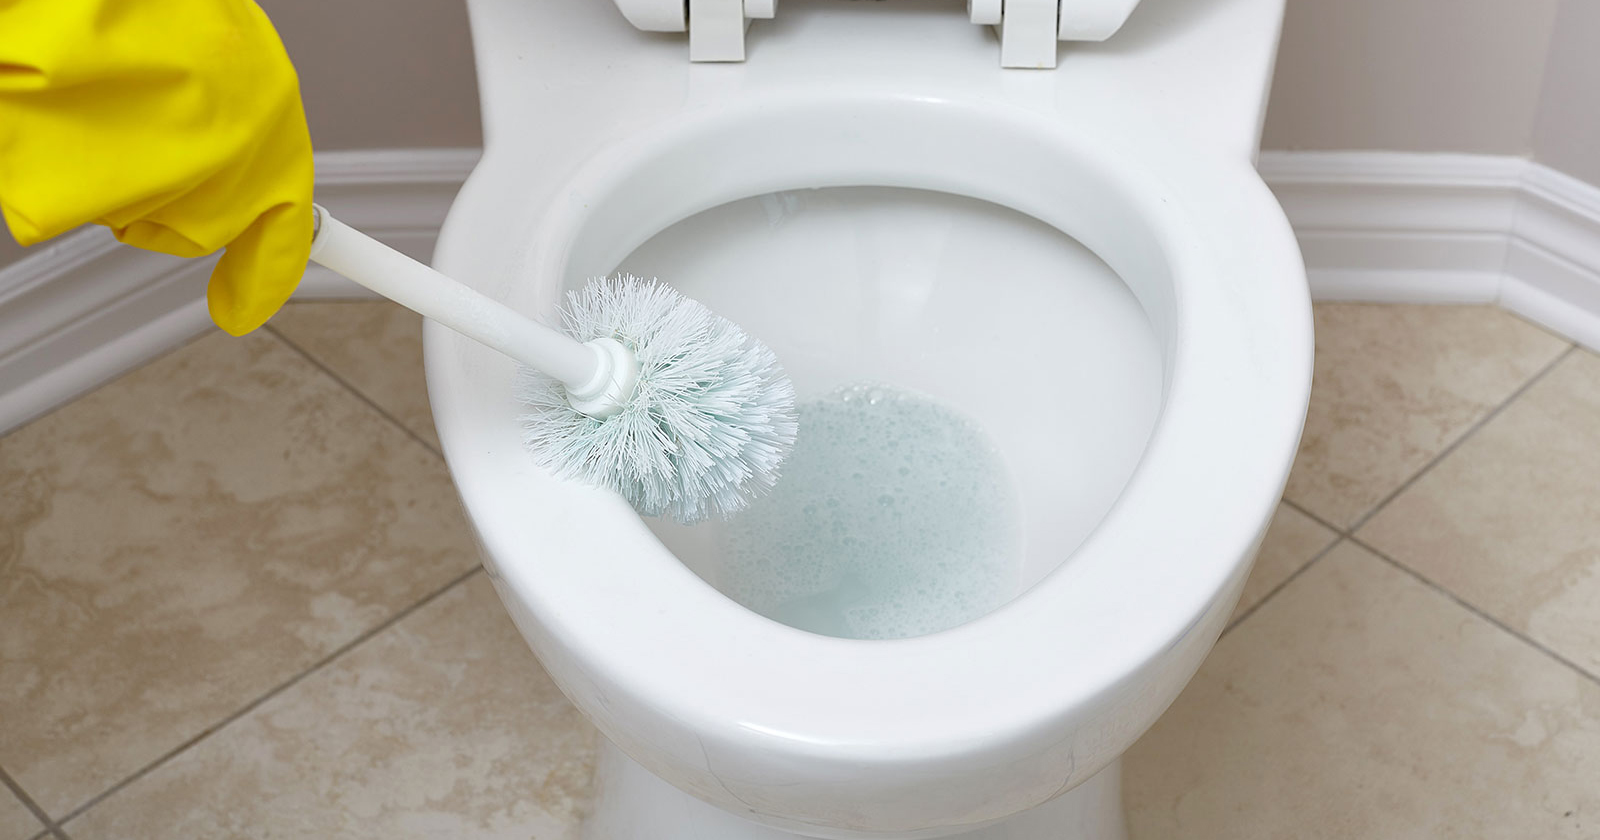 8 Cara Mudah Membersihkan Toilet